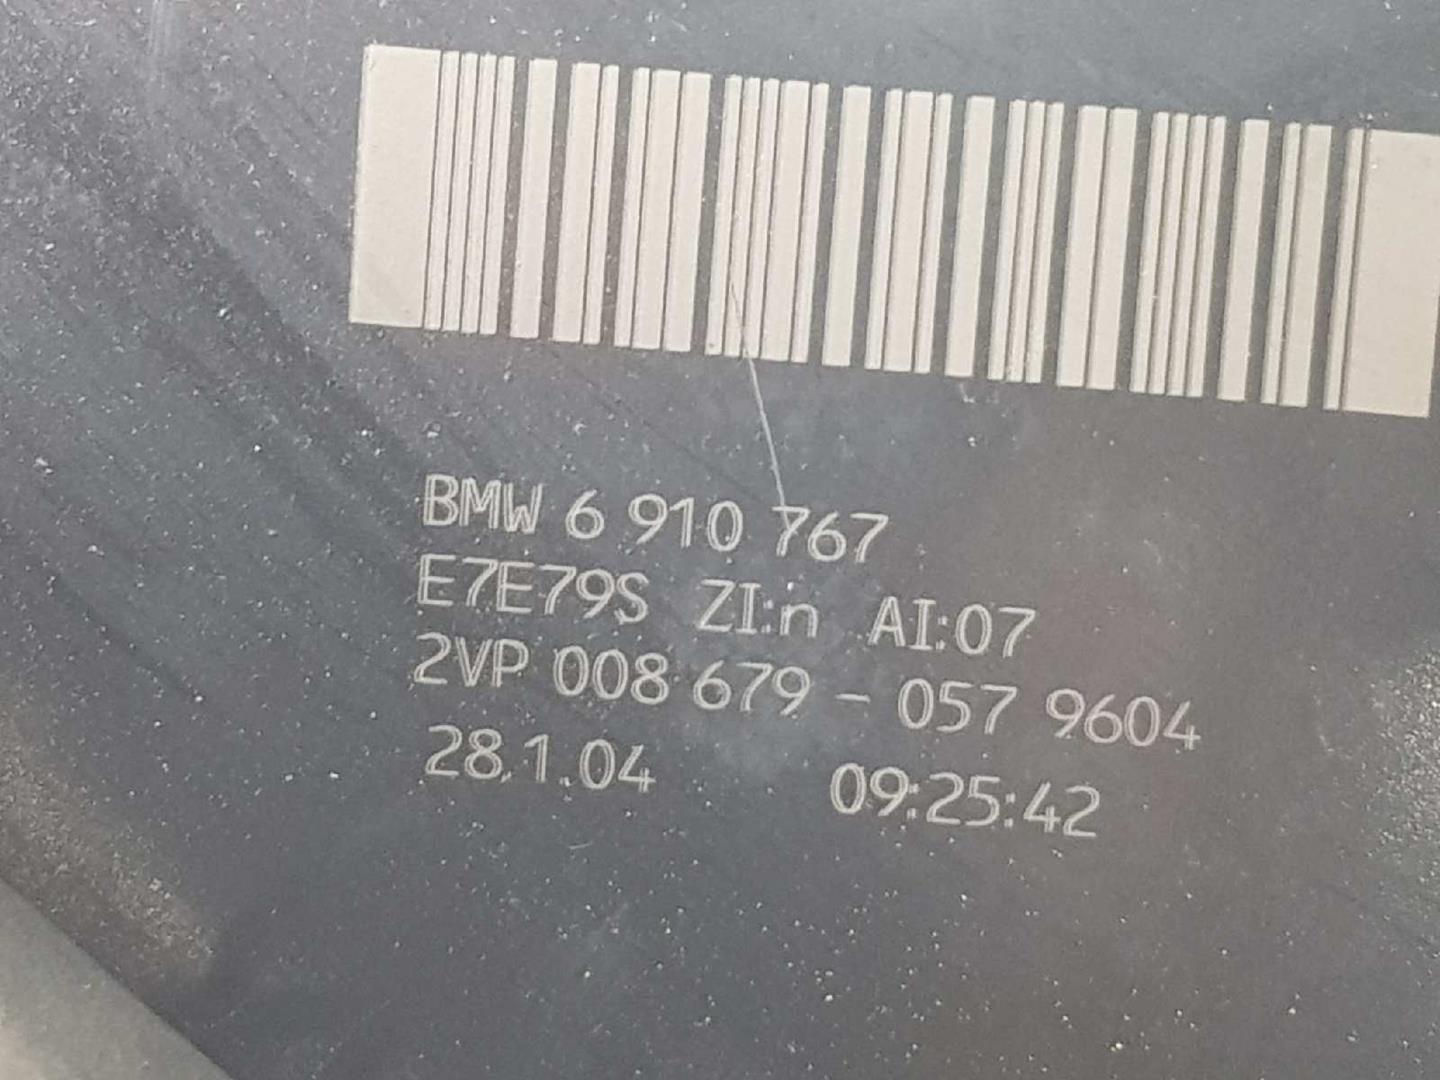 BMW 5 Series E60/E61 (2003-2010) Galinis kairys žibintas 63217165737, 6910767, 2VP008679 19733657